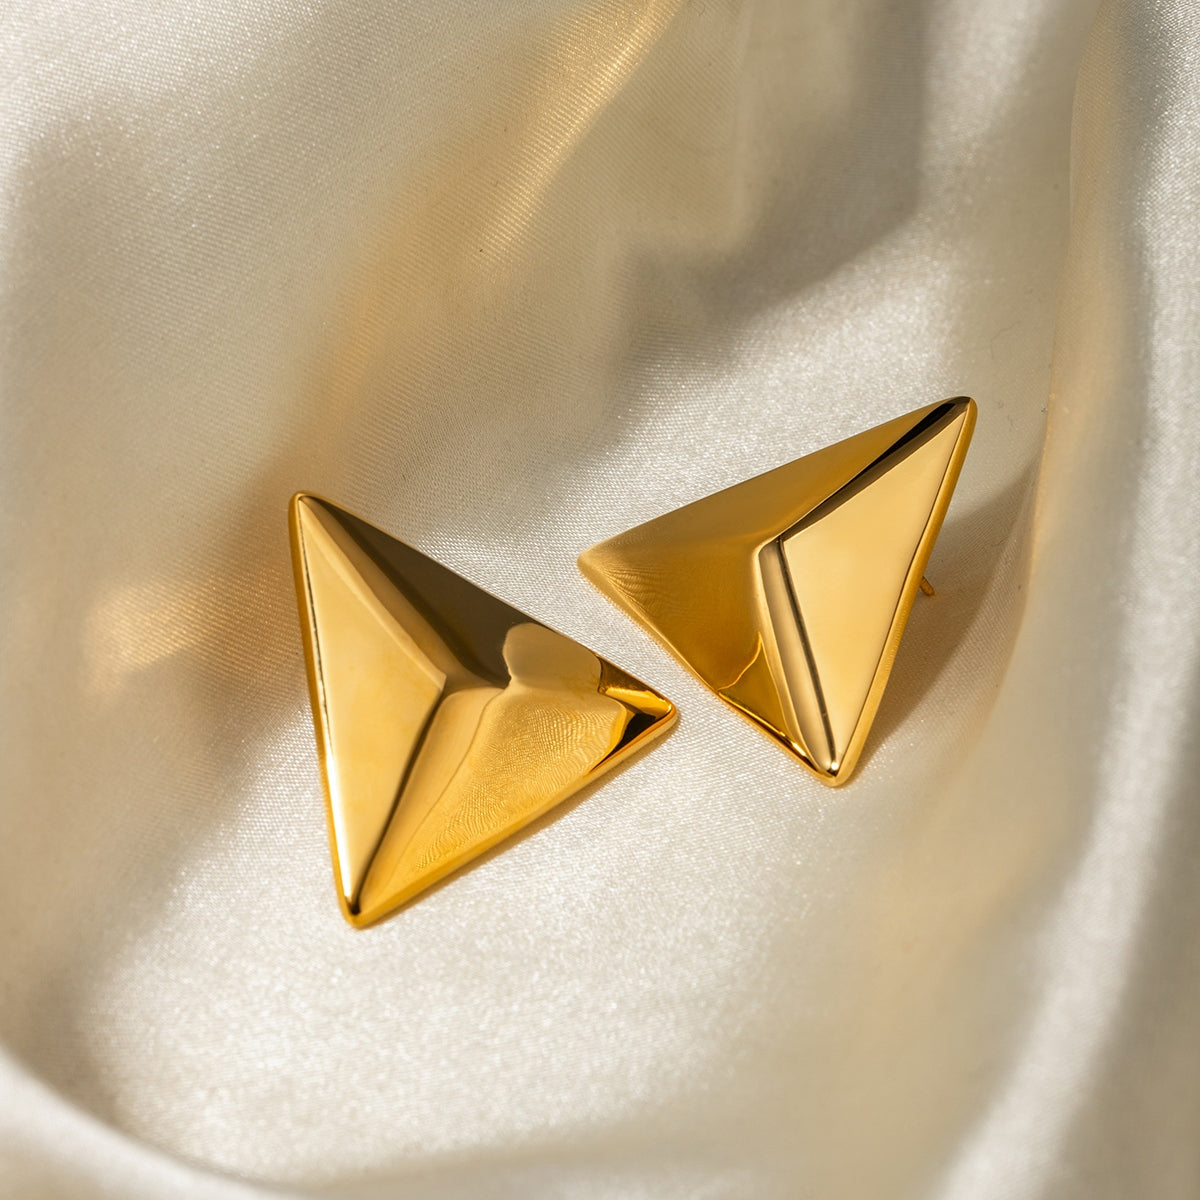 TEEK - Stainless Steel 3D Triangle Earrings JEWELRY TEEK Trend   